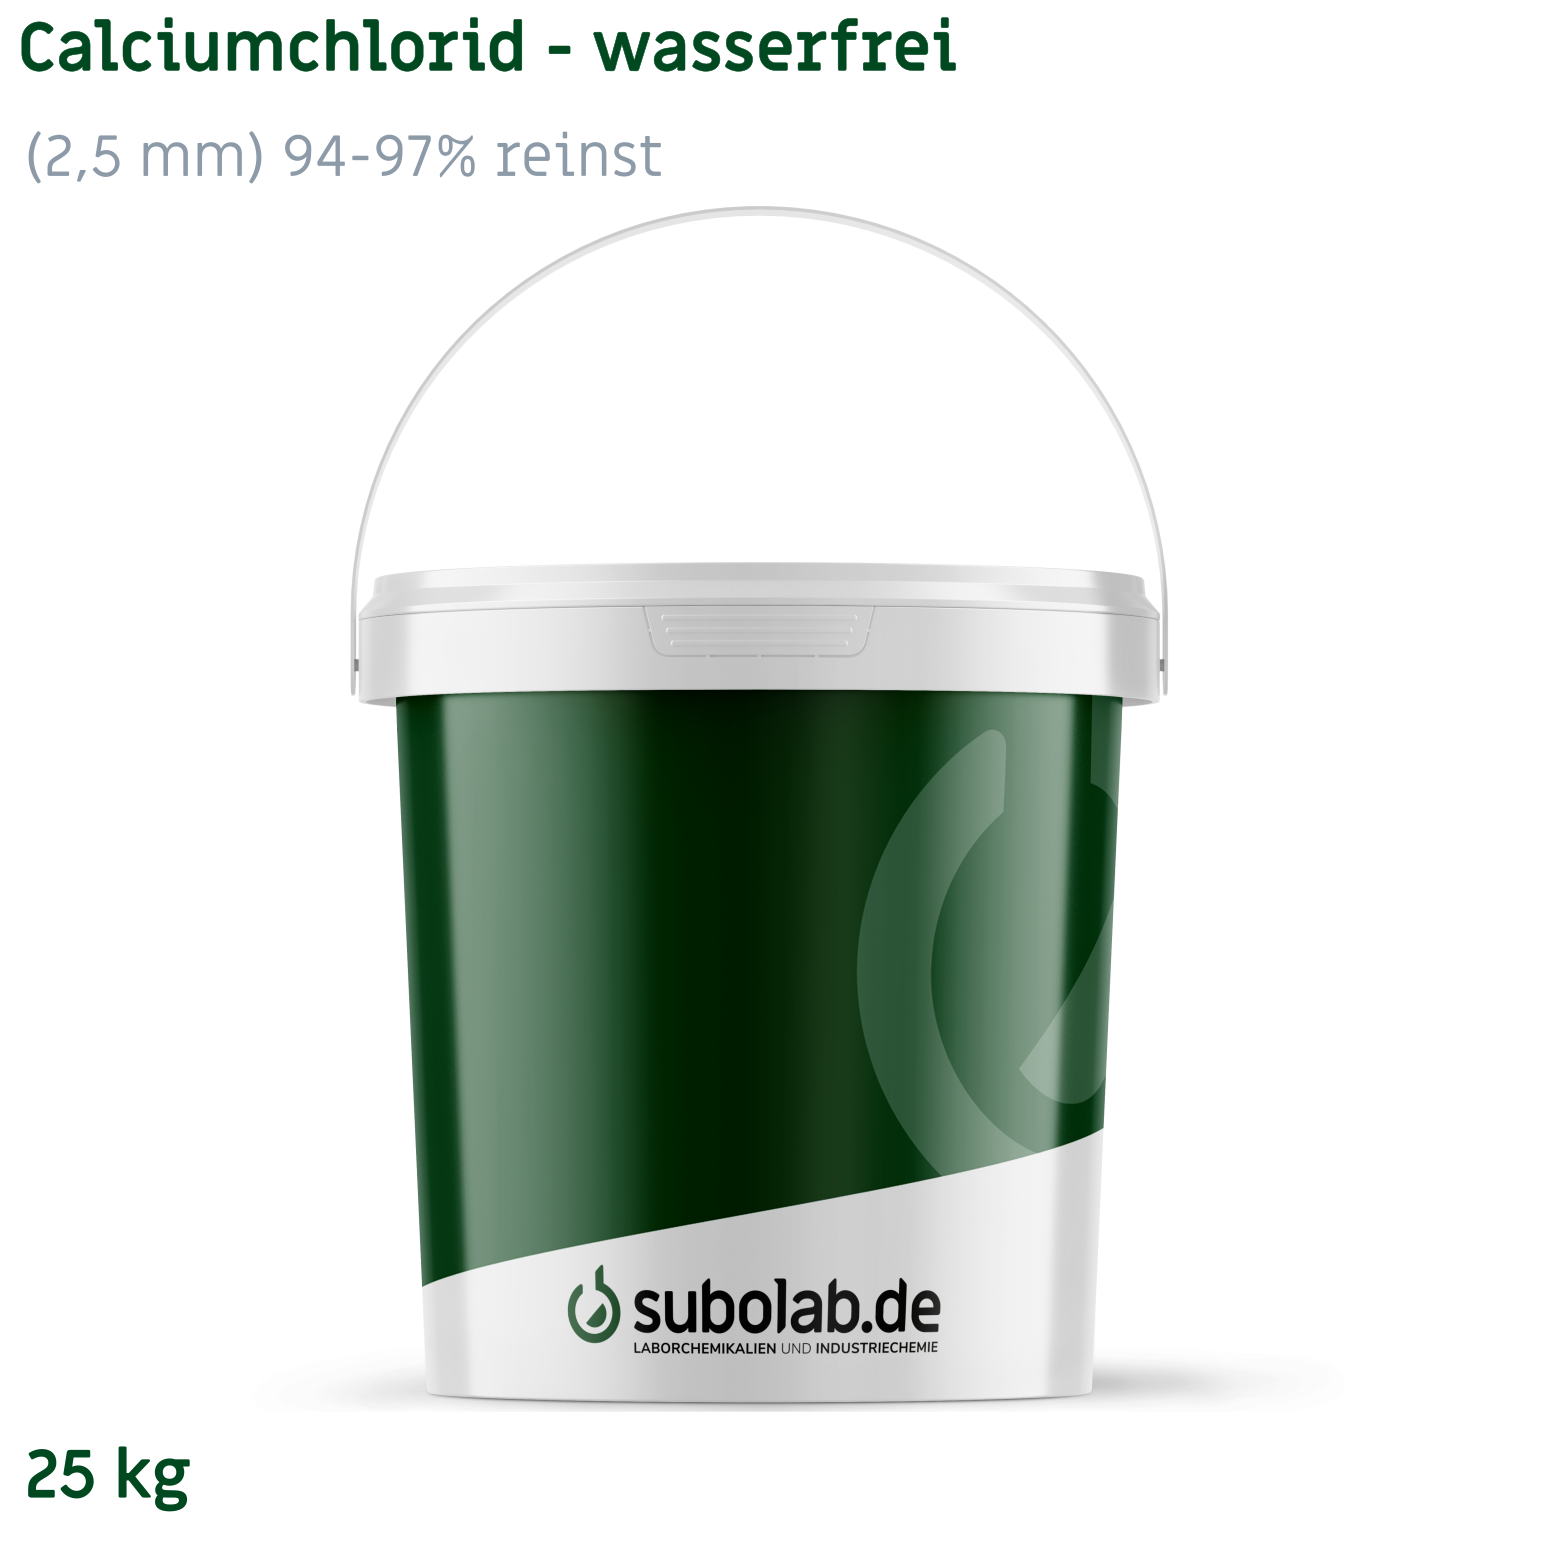 Bild von Calciumchlorid - wasserfrei gekörnt (2,5 mm) 94-97% reinst (25 kg)